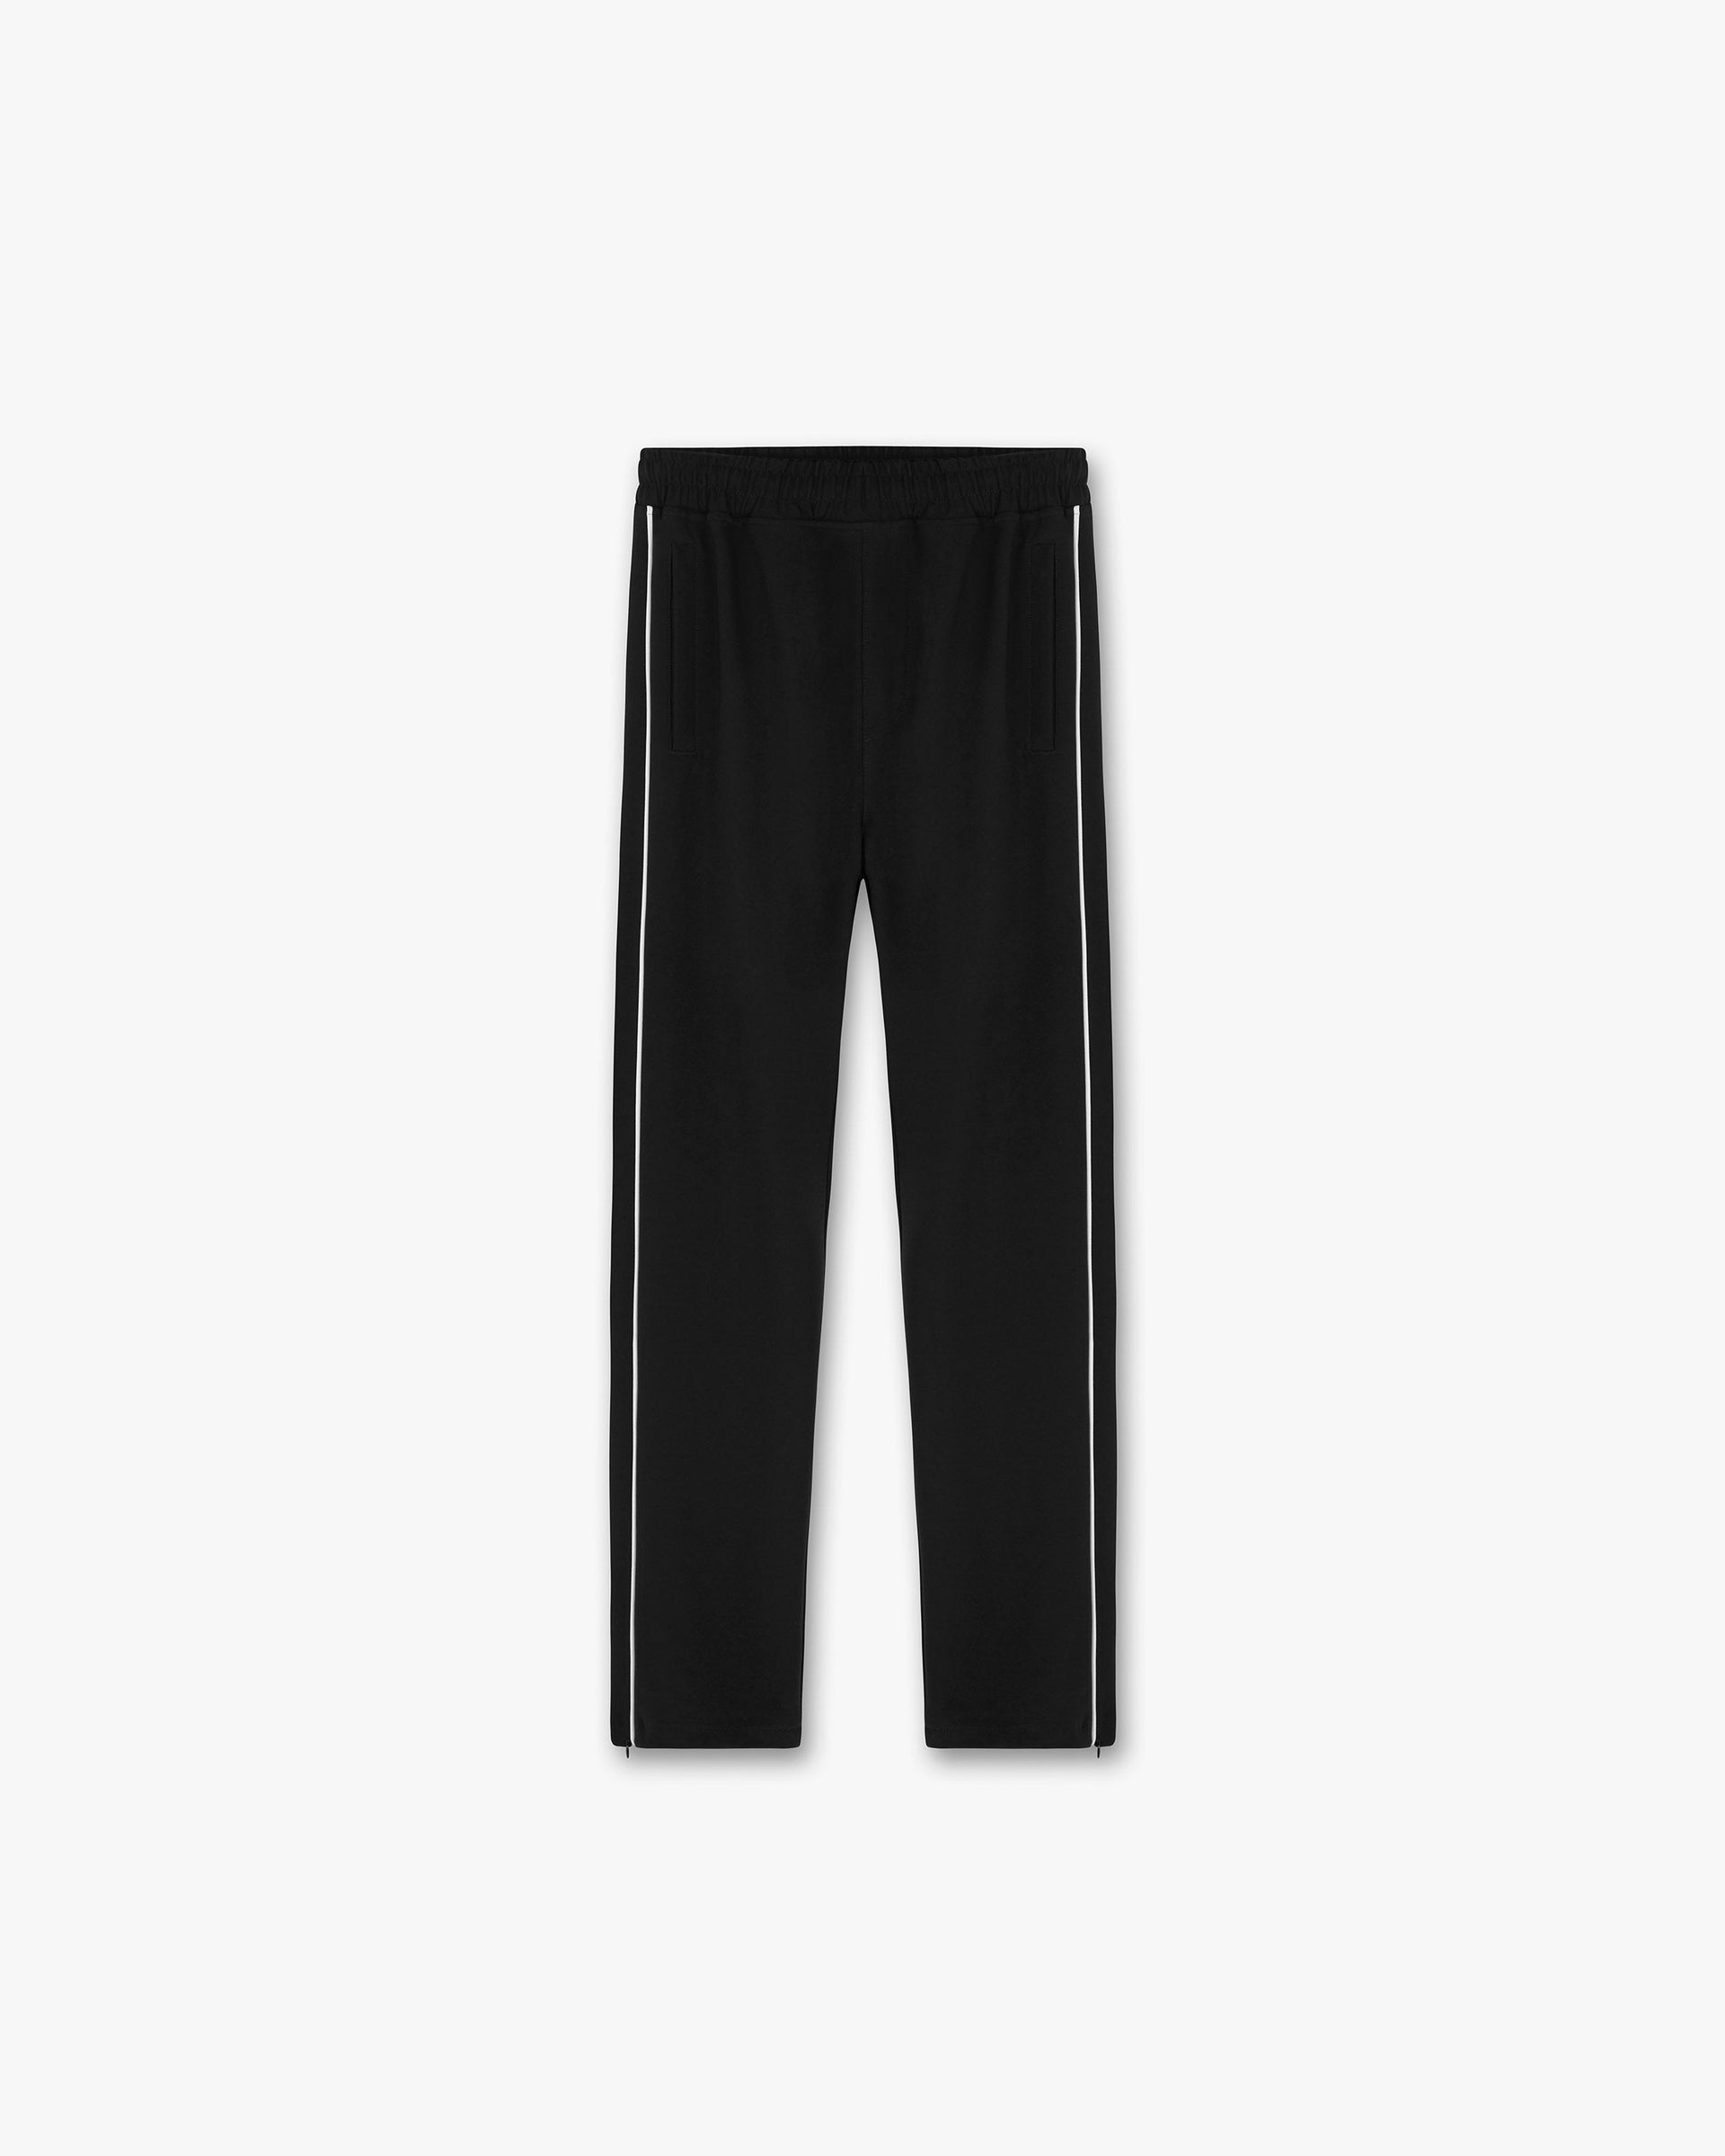 Split Trackpant | Black Cream Pants SC22 | Represent Clo